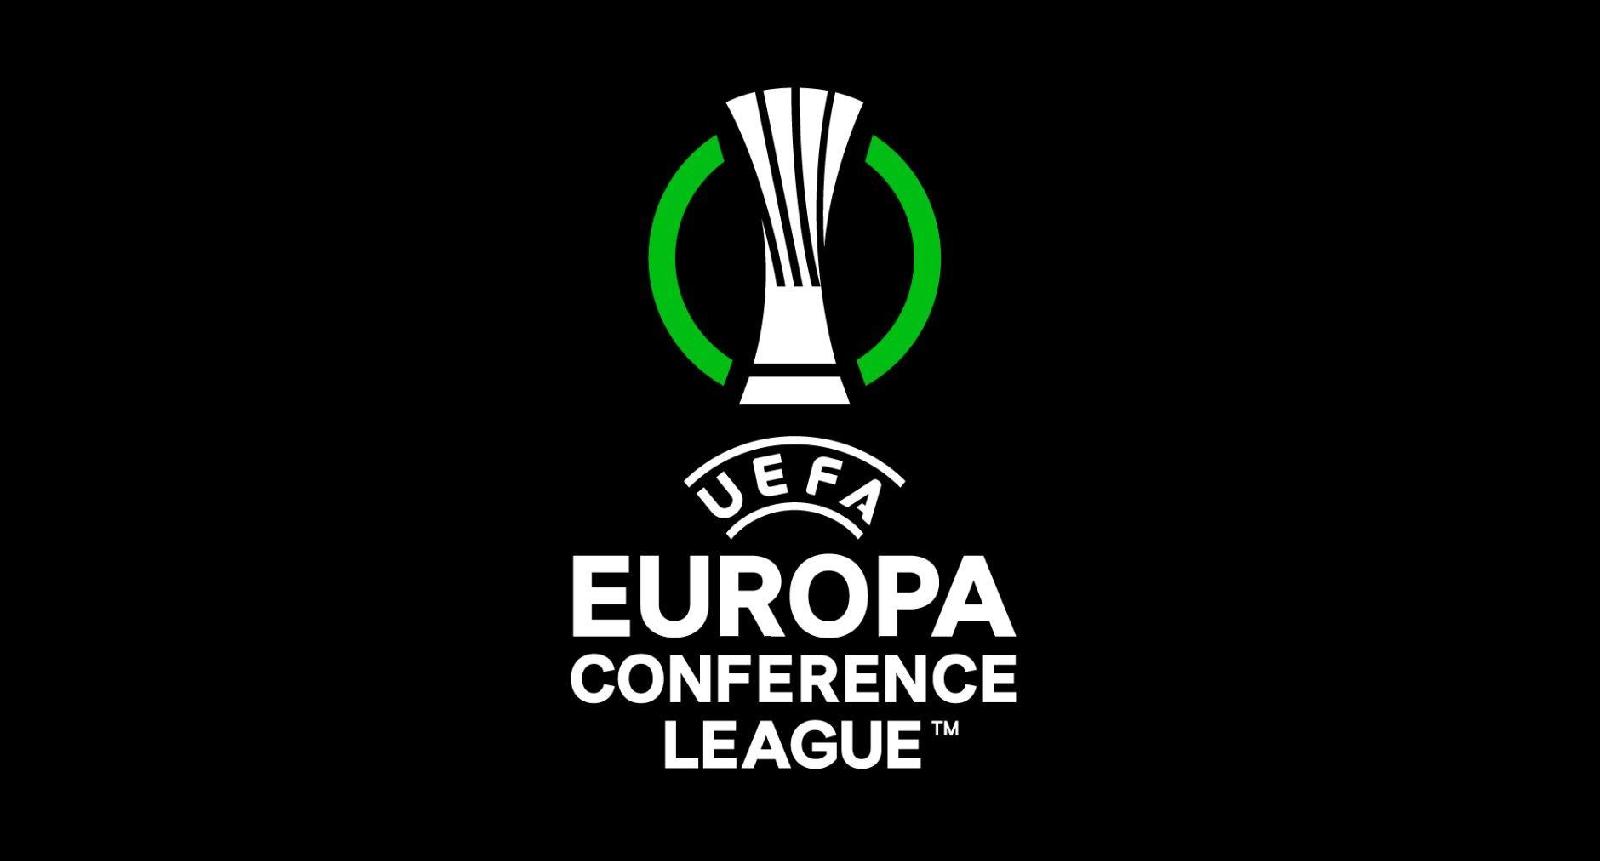 Il logo della nuova competizione europea che esordirà nella prossima stagione 